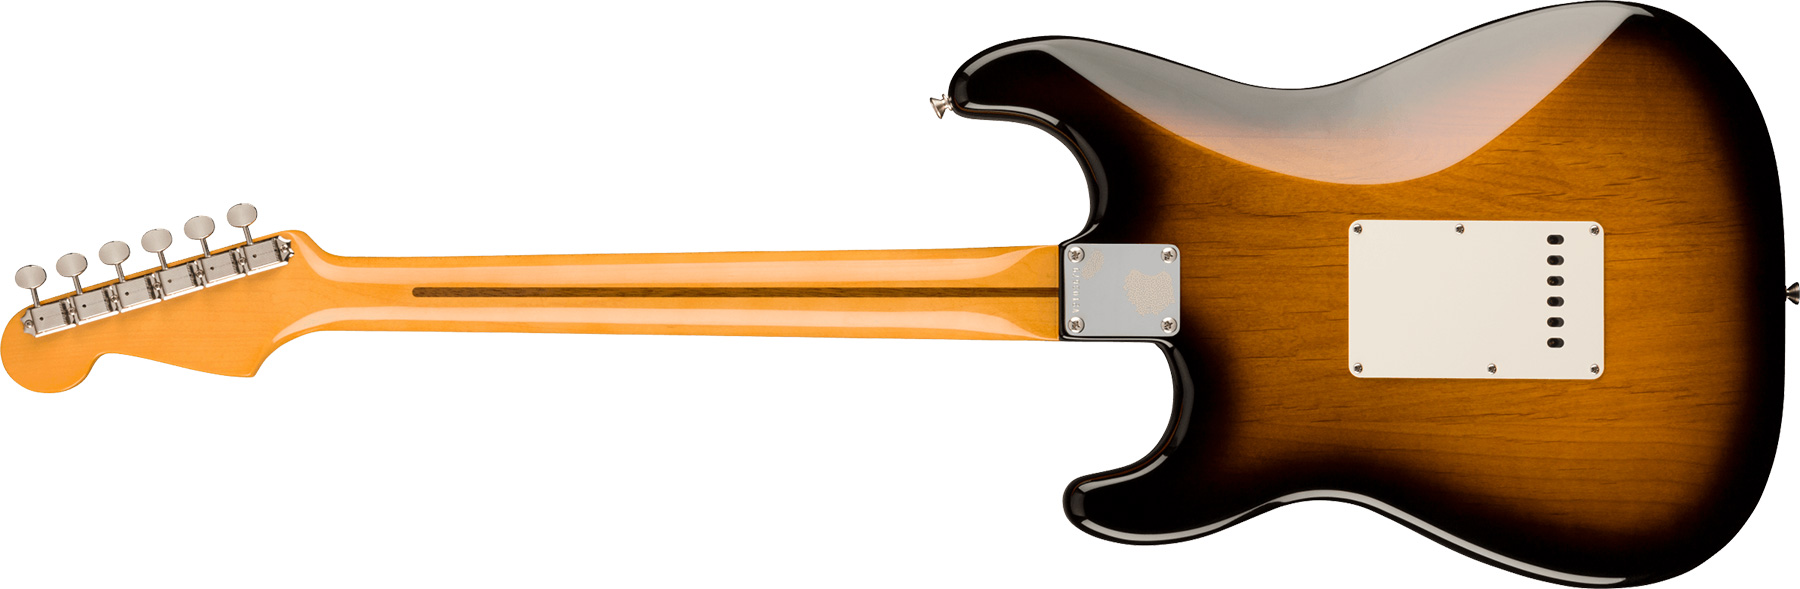 Fender Strat 1957 American Vintage Ii Usa 3s Trem Mn - 2-color Sunburst - E-Gitarre in Str-Form - Variation 1